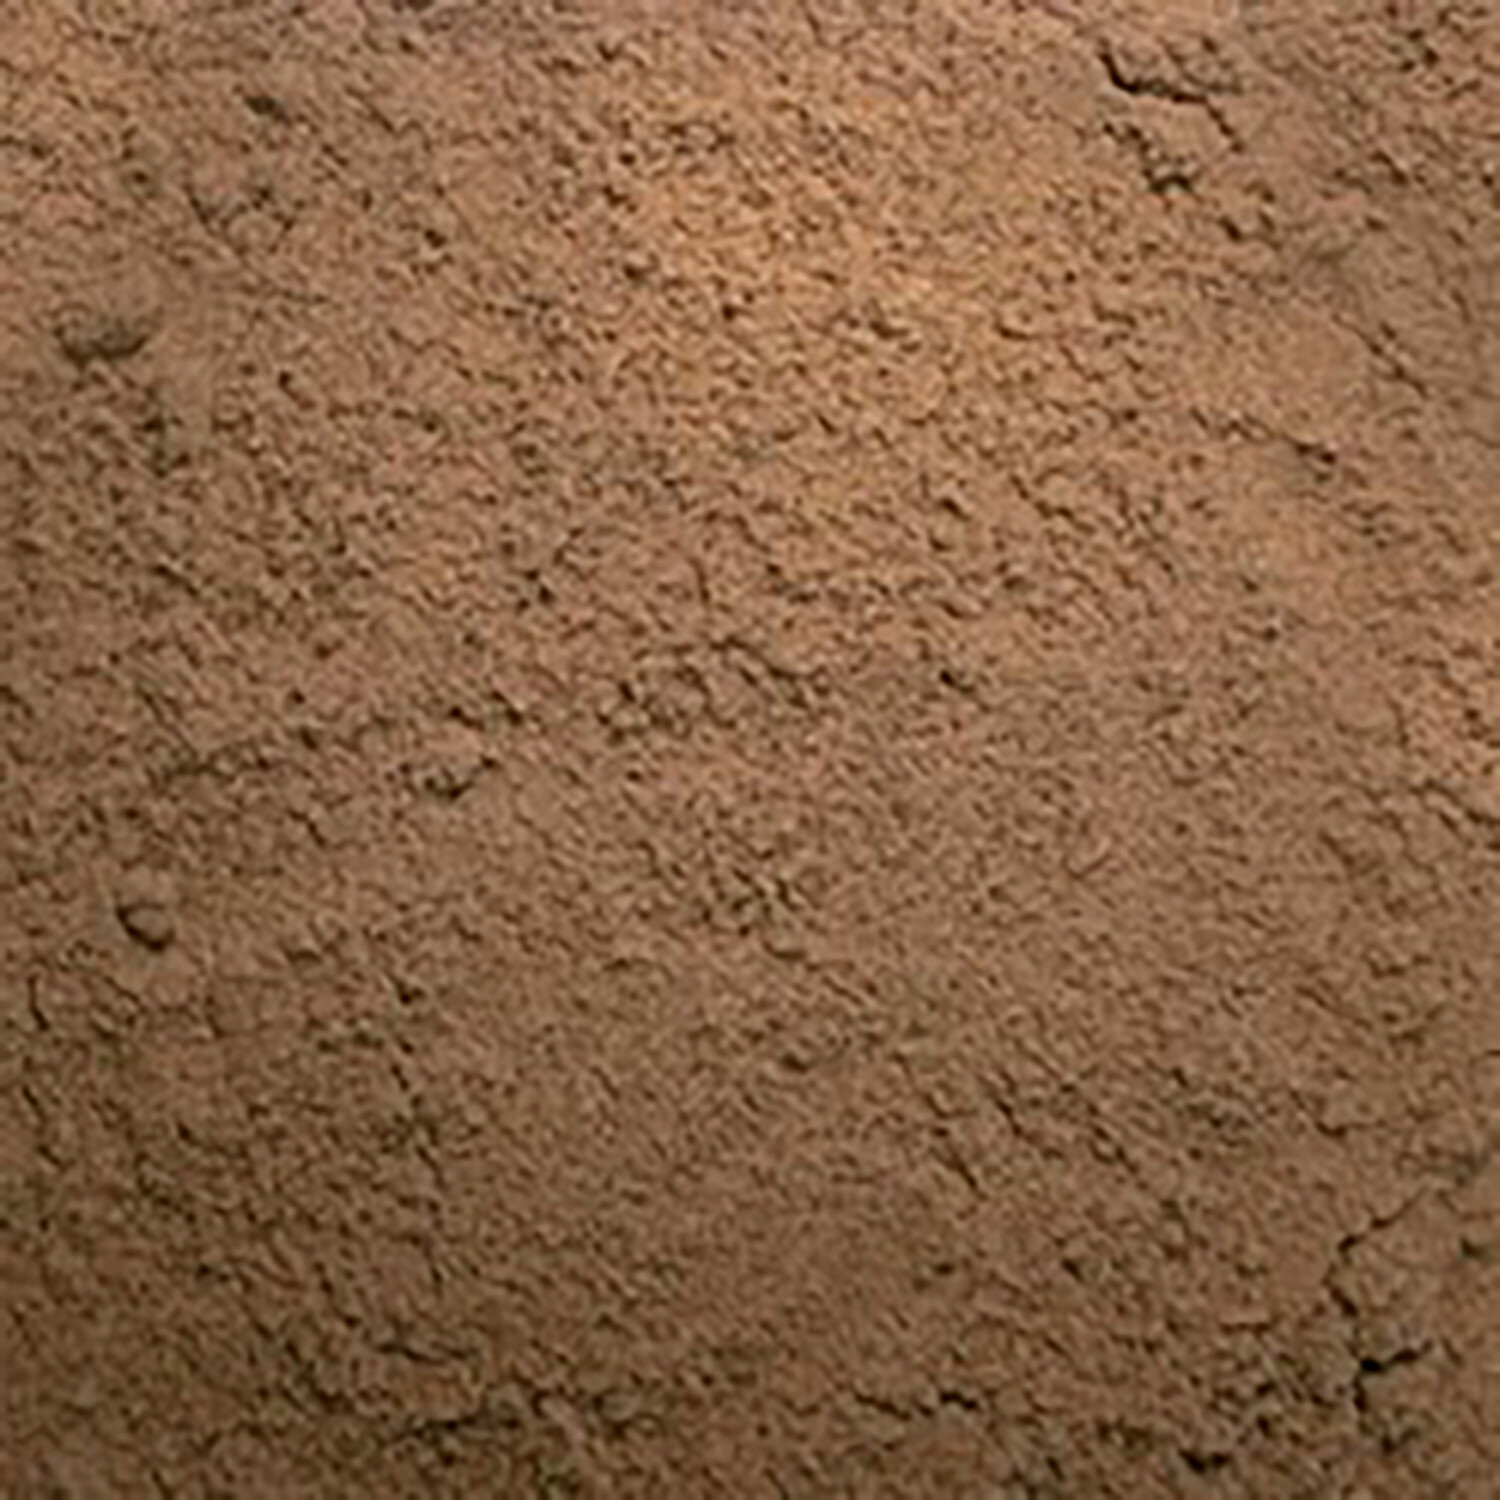 Sharp Sand 20kg Image 1